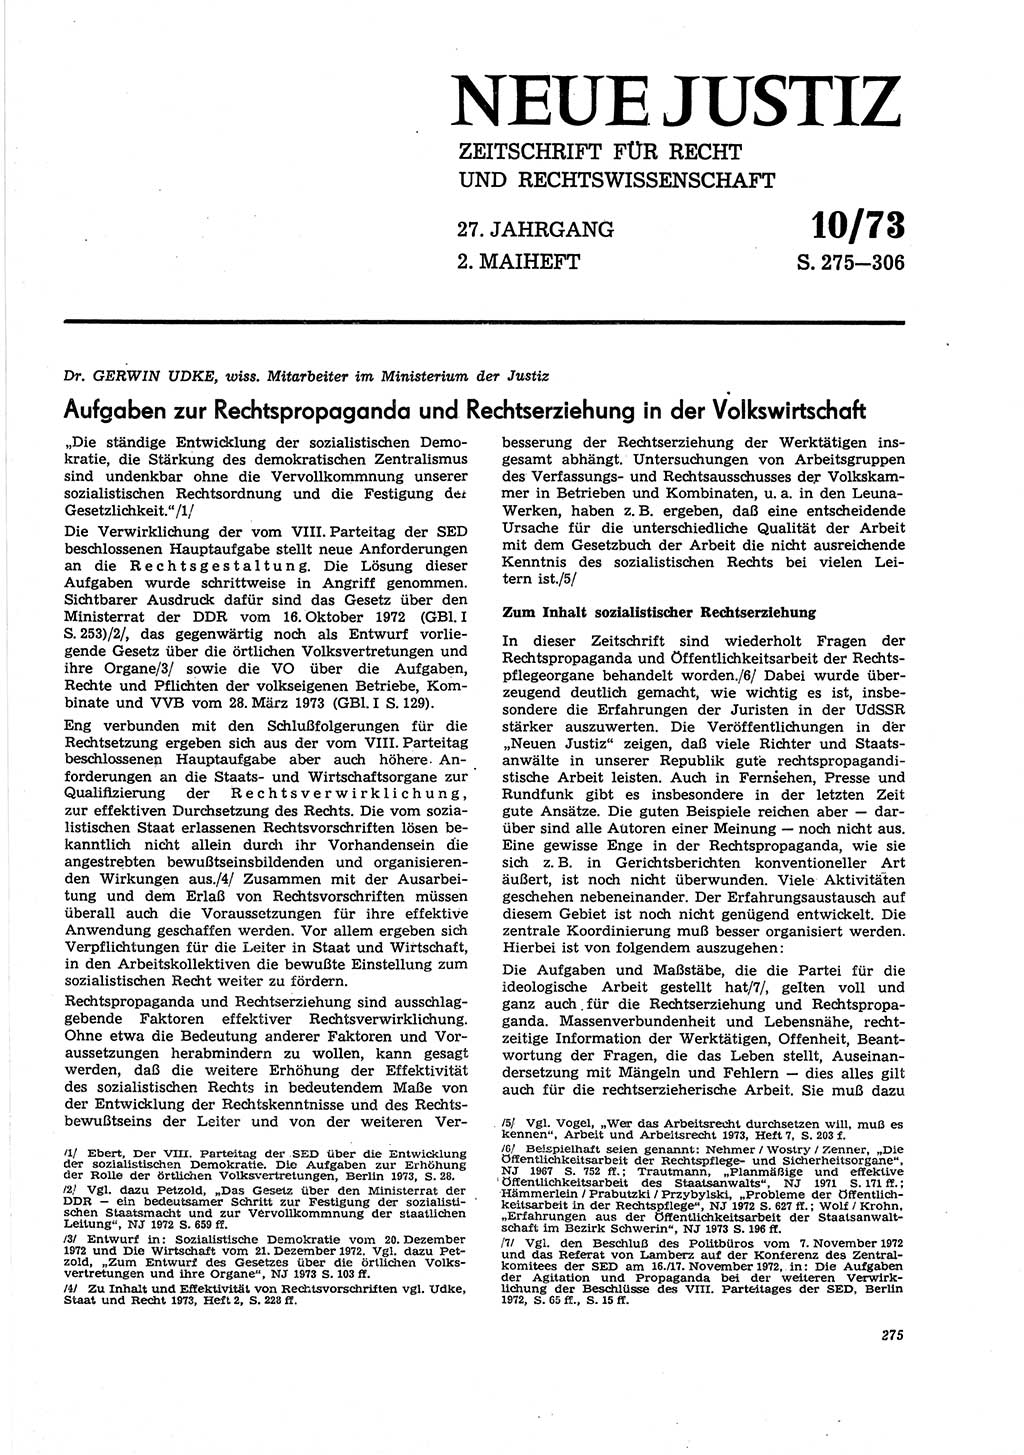 Neue Justiz (NJ), Zeitschrift für Recht und Rechtswissenschaft [Deutsche Demokratische Republik (DDR)], 27. Jahrgang 1973, Seite 275 (NJ DDR 1973, S. 275)